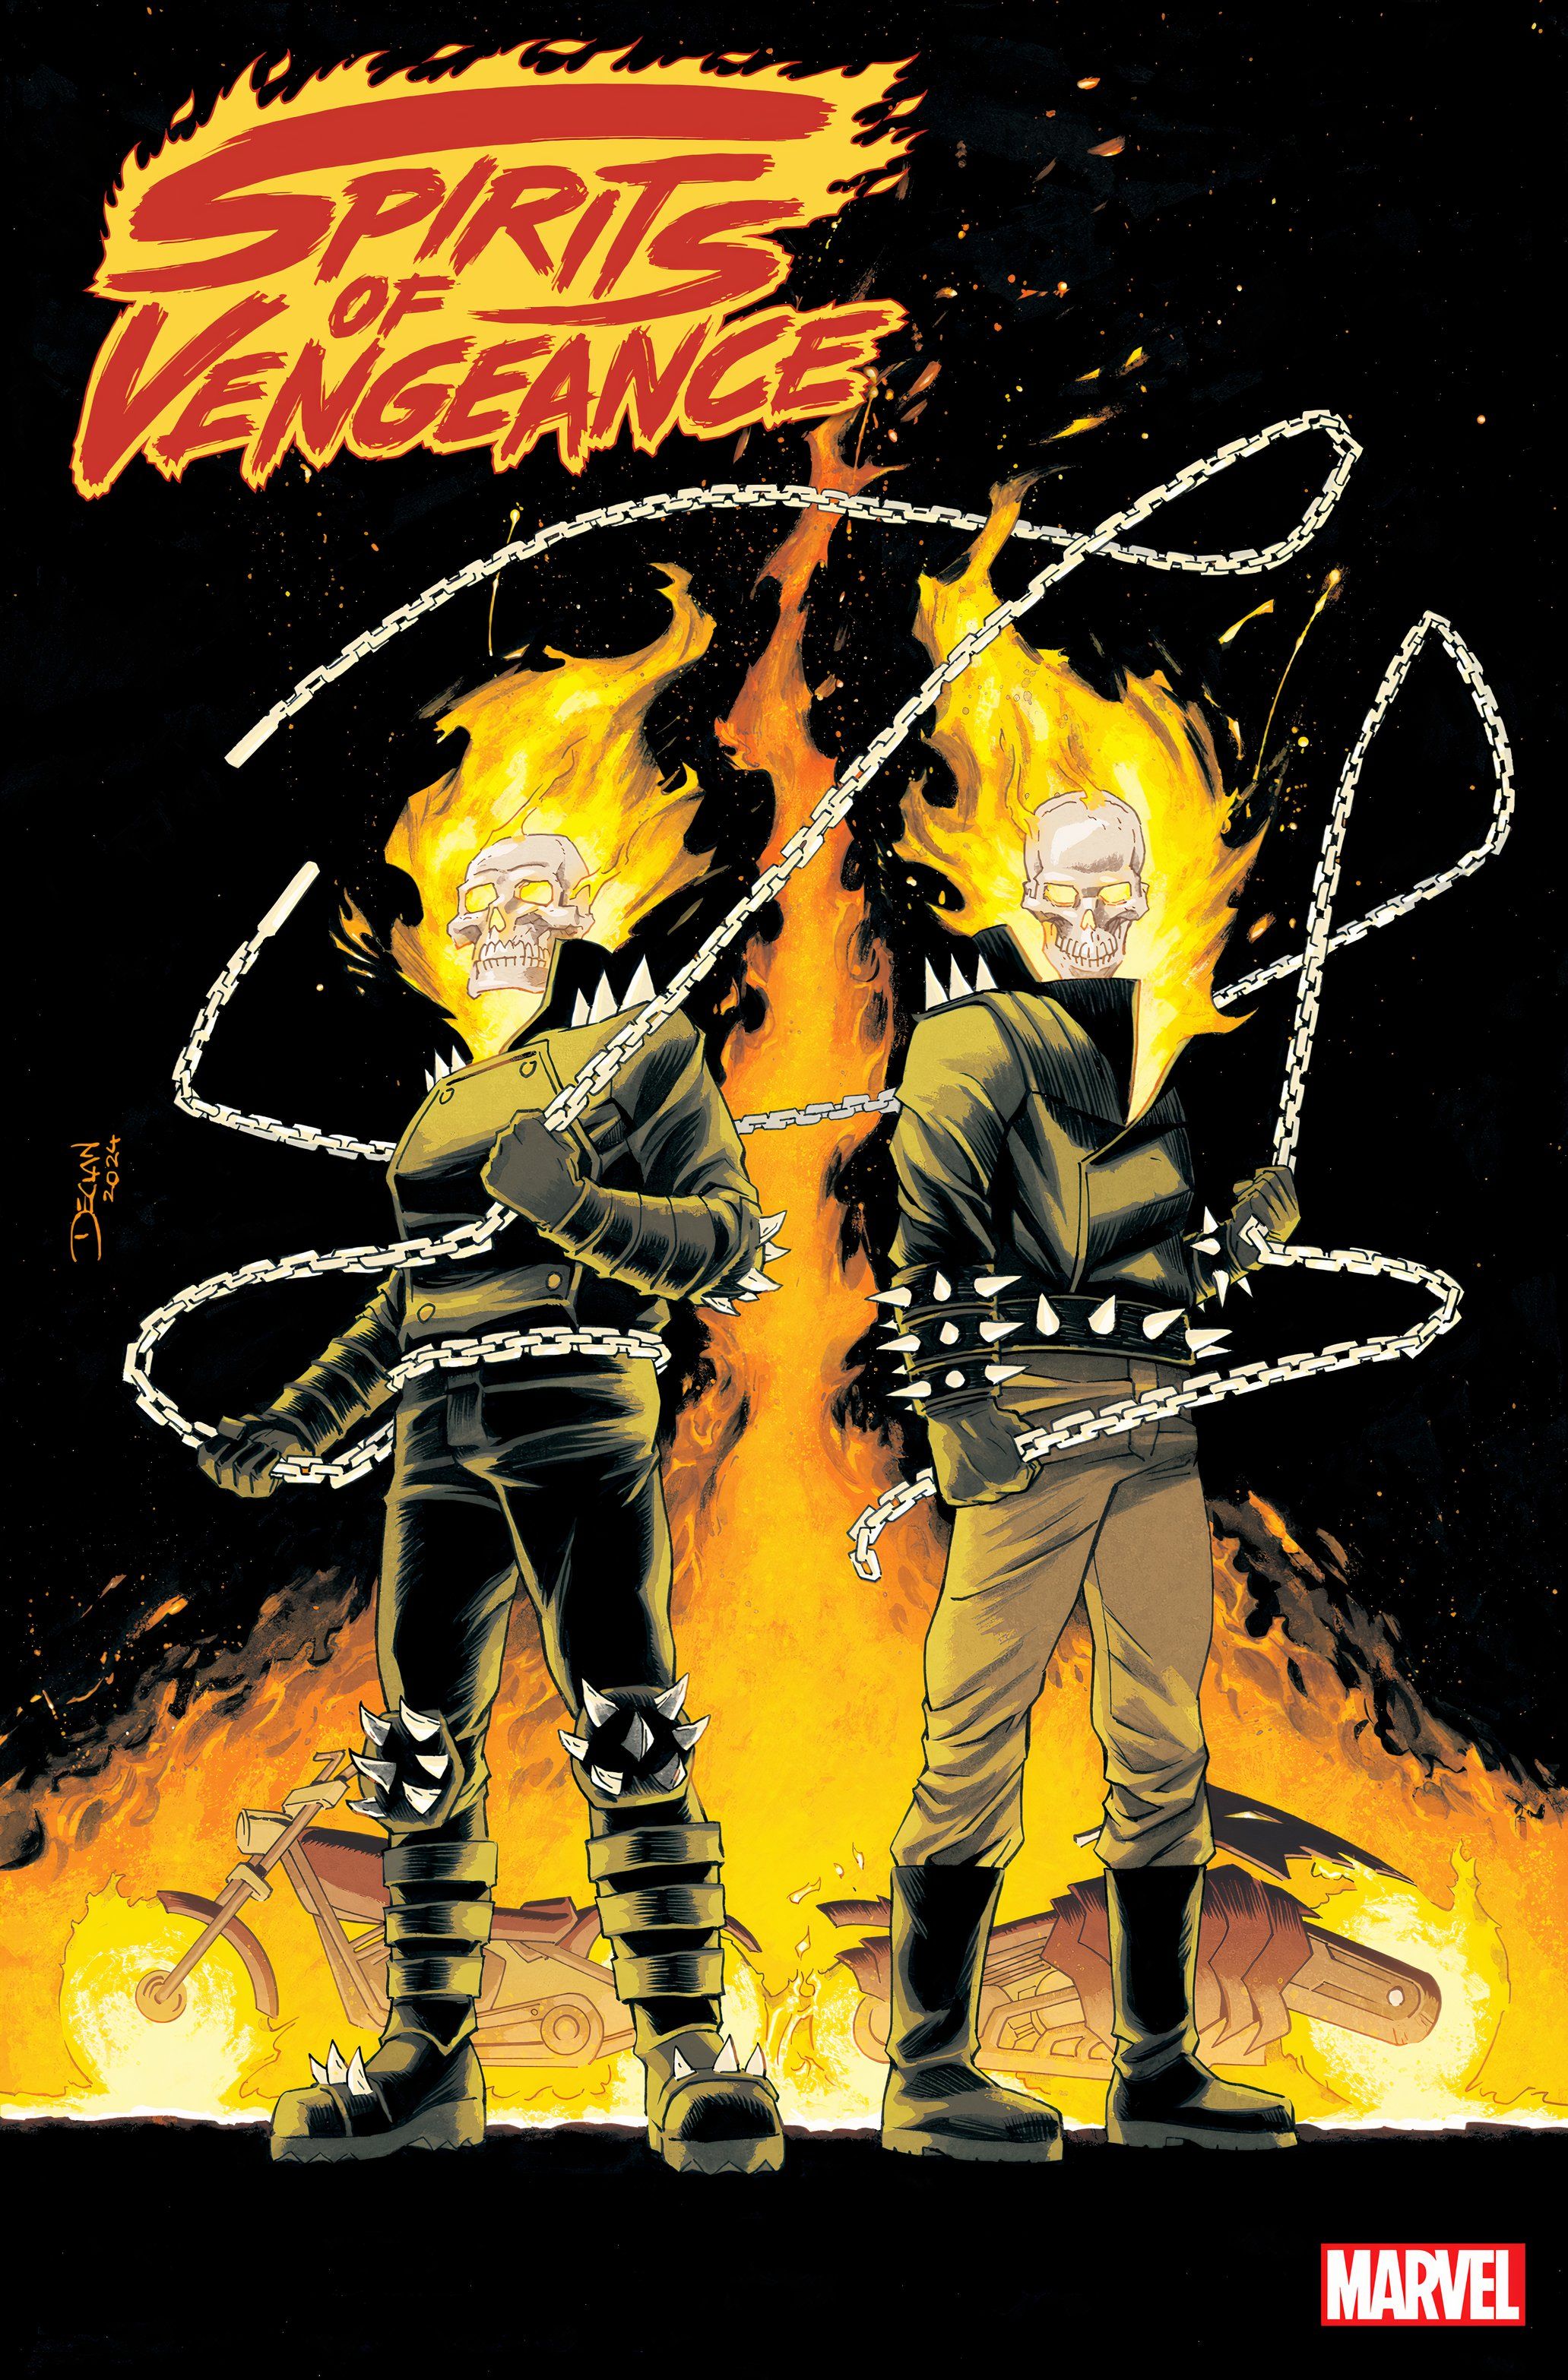 Spirits of Vengeance #1 Cover de Declan Shalvey Danny Ketch e Johnny Blaze estão lado a lado.